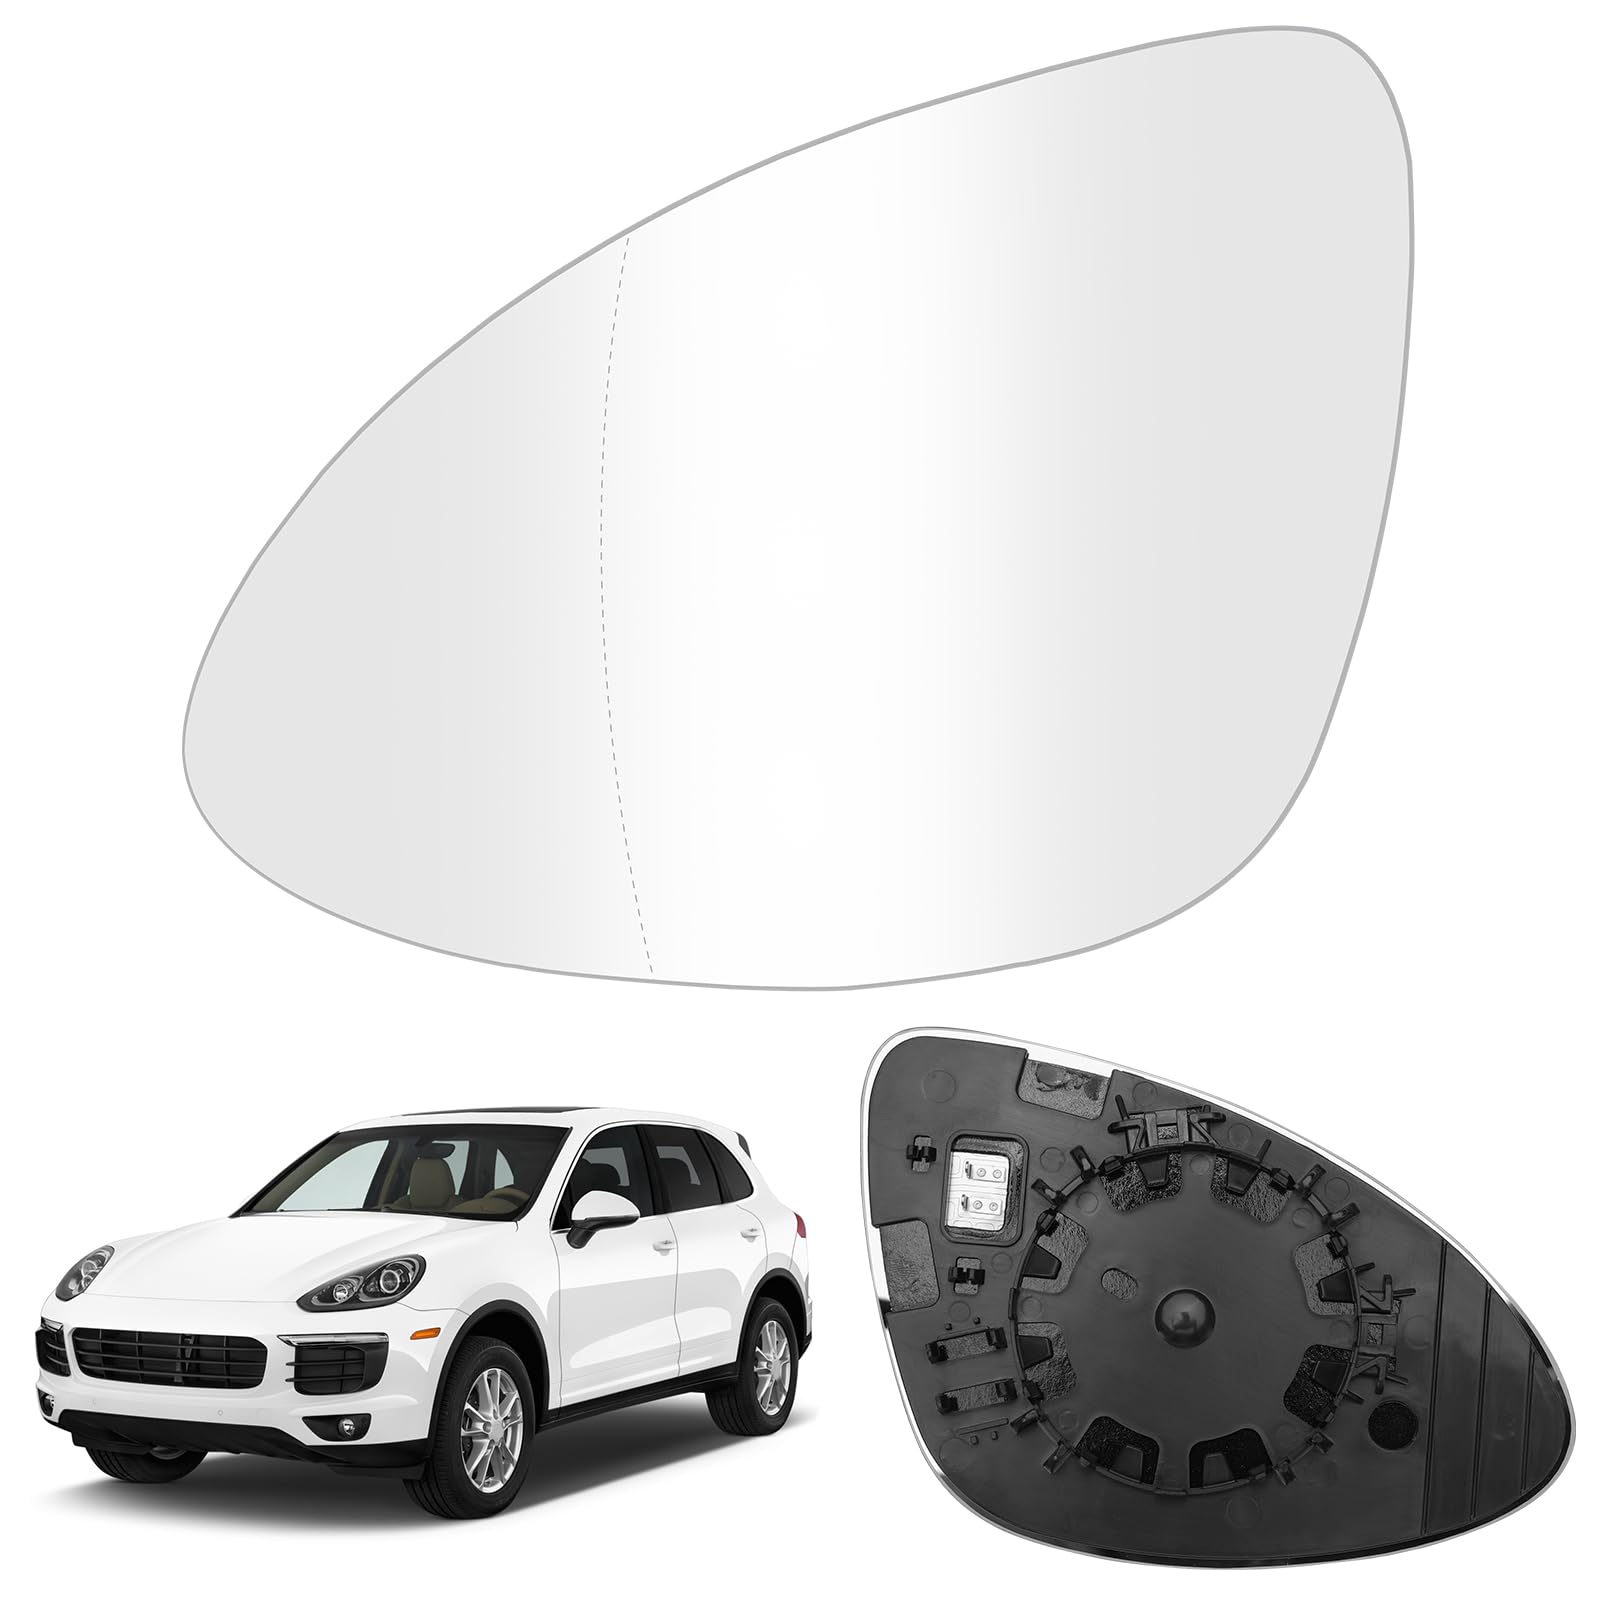 Spiegelglas Ersatz für Porsche Cayenne 2011-2018, Außenspiegel Glas Asphärisch Verstellbar Geeignet, Umkehrlinse Rückfahrglas Spiegel (Links)… von JinsenTGG